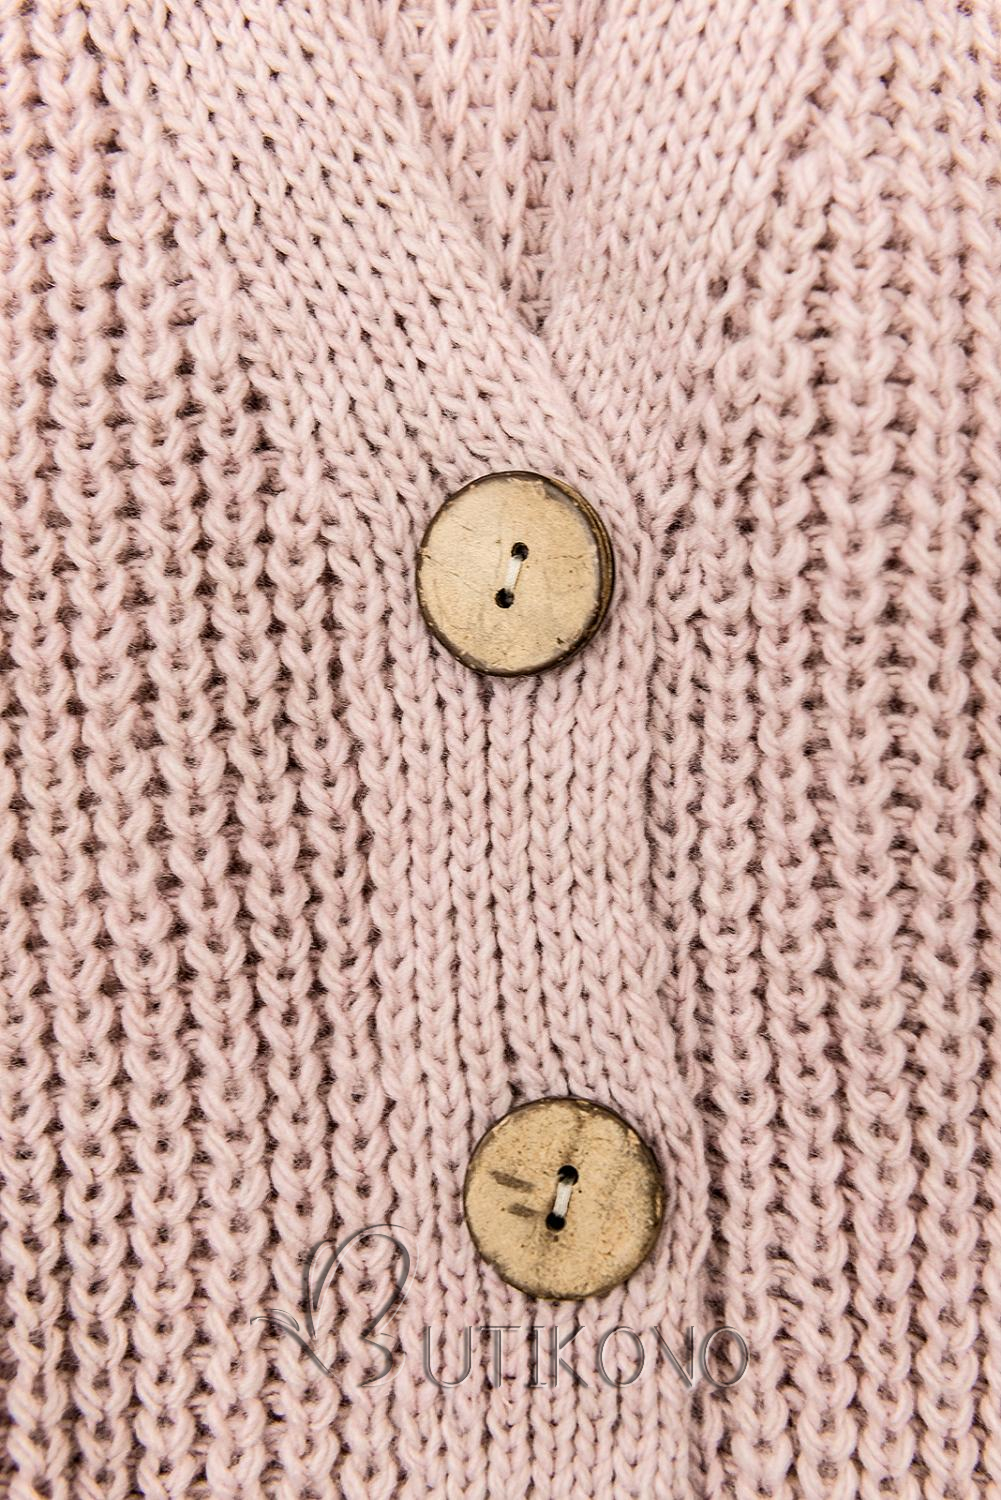 Púdrovo ružový pletený sveter na gombíky